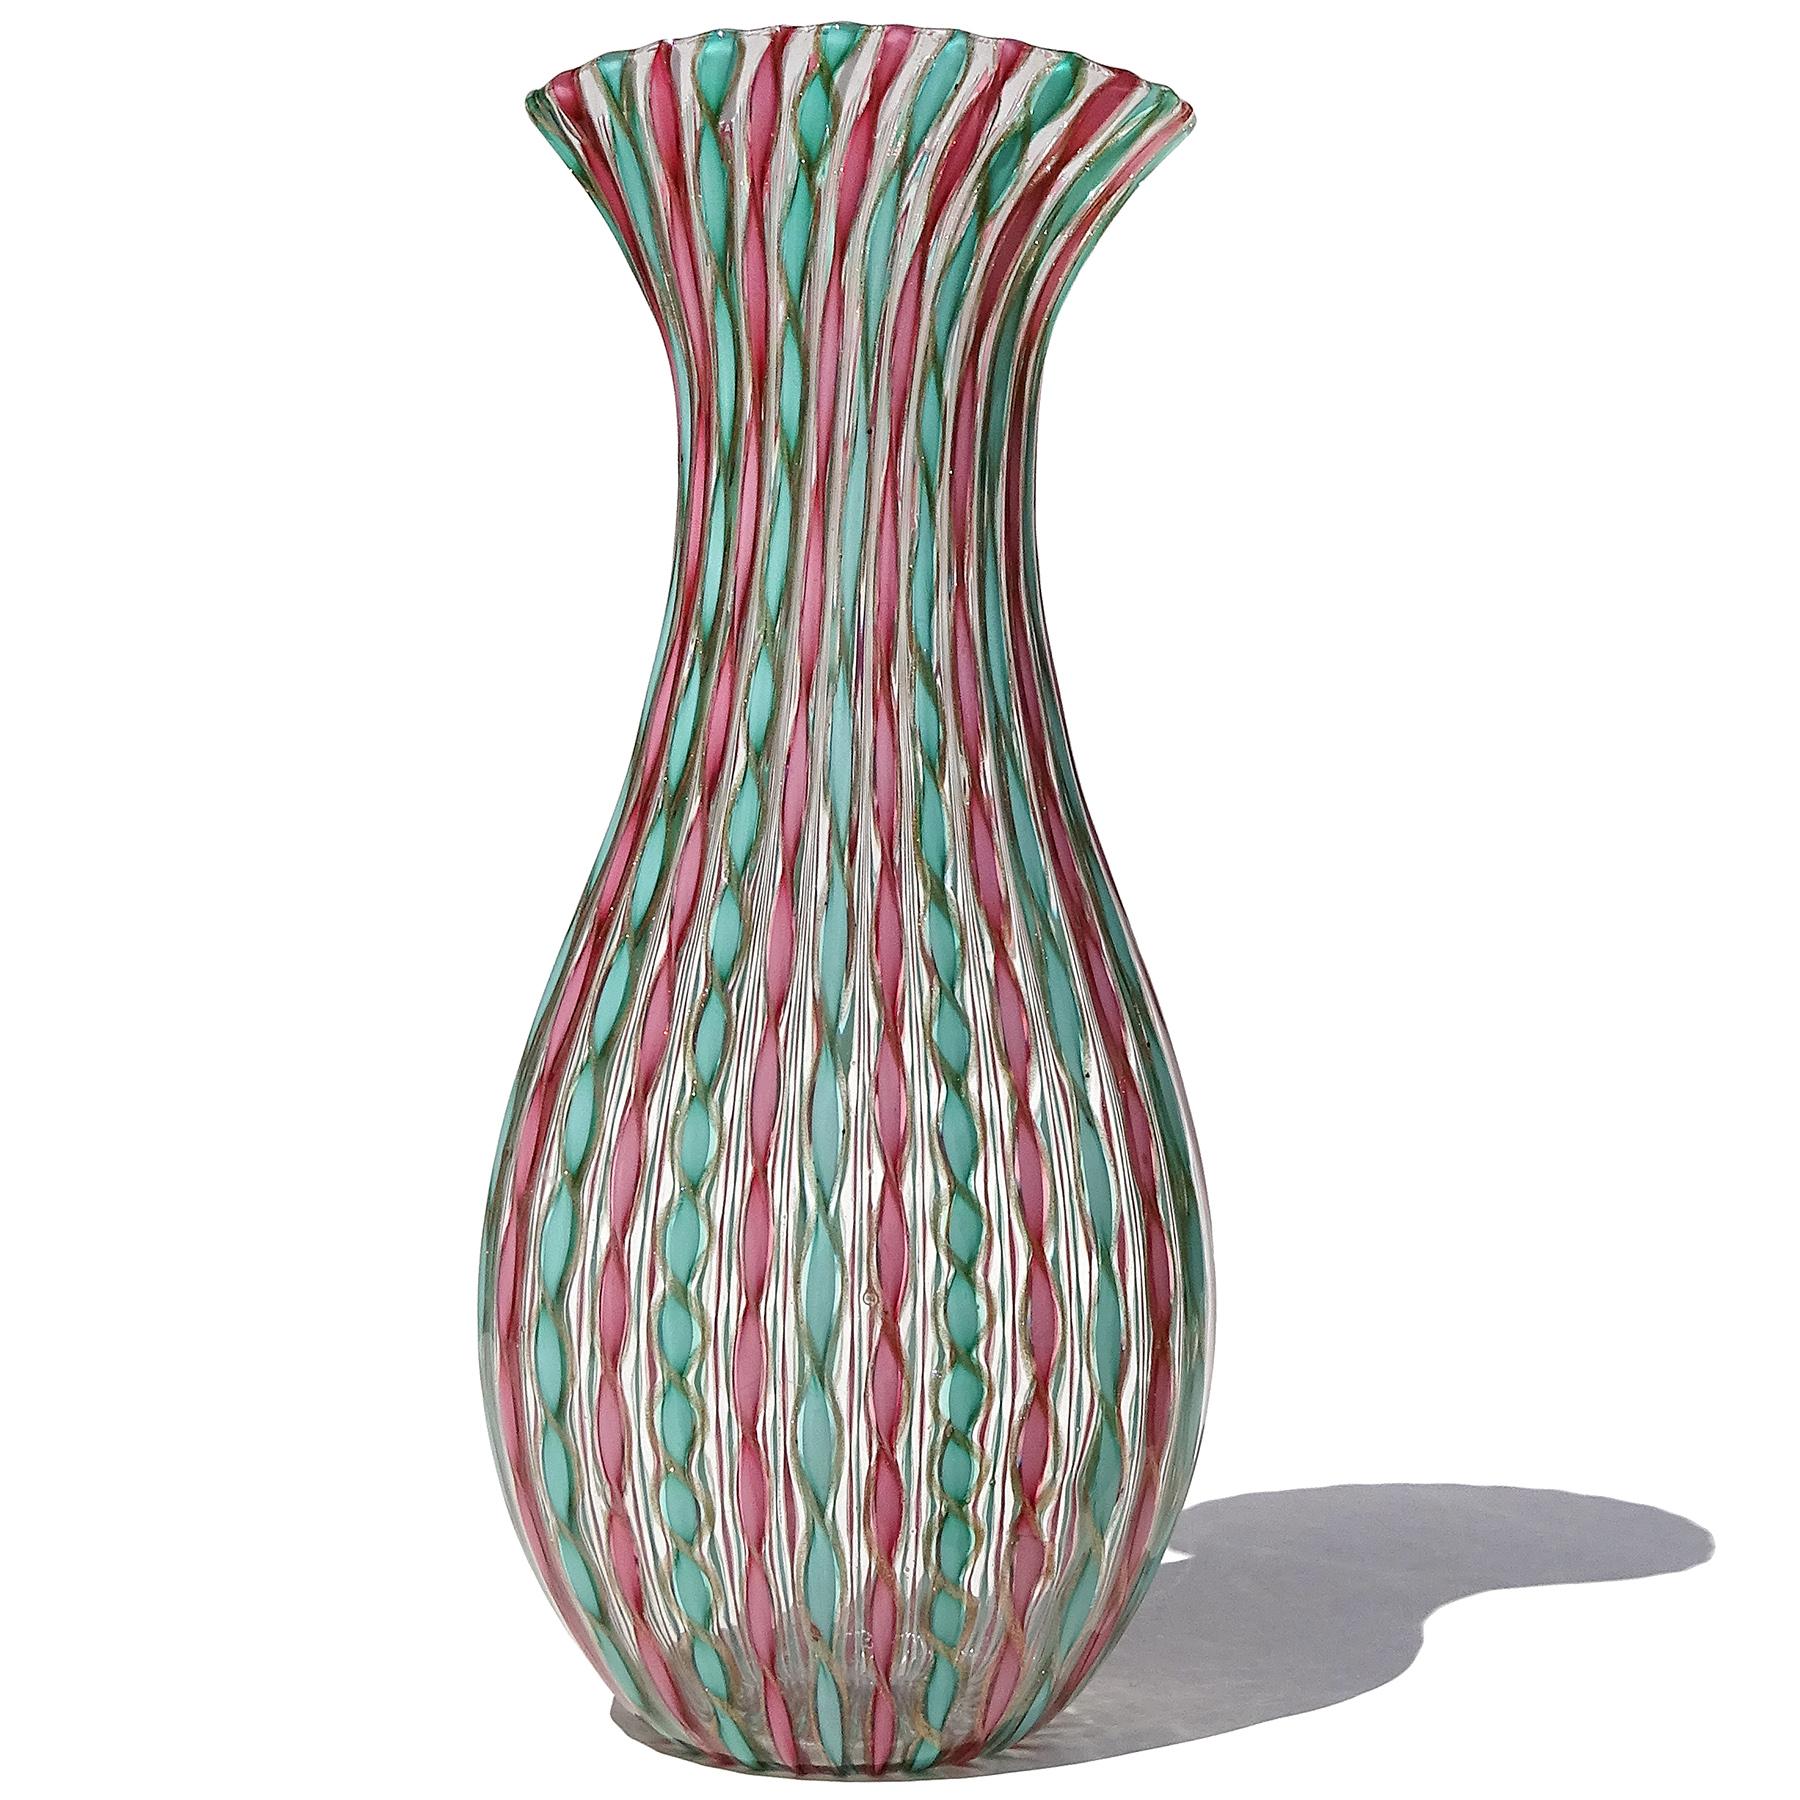 Magnifique vase à fleurs en verre d'art italien de Murano soufflé à la main en vert sarcelle, rose et rubans torsadés cuivrés. Créé à la manière de la société Fratelli Toso, et du designer Dino Martens. Le vase présente un motif alternant des rubans